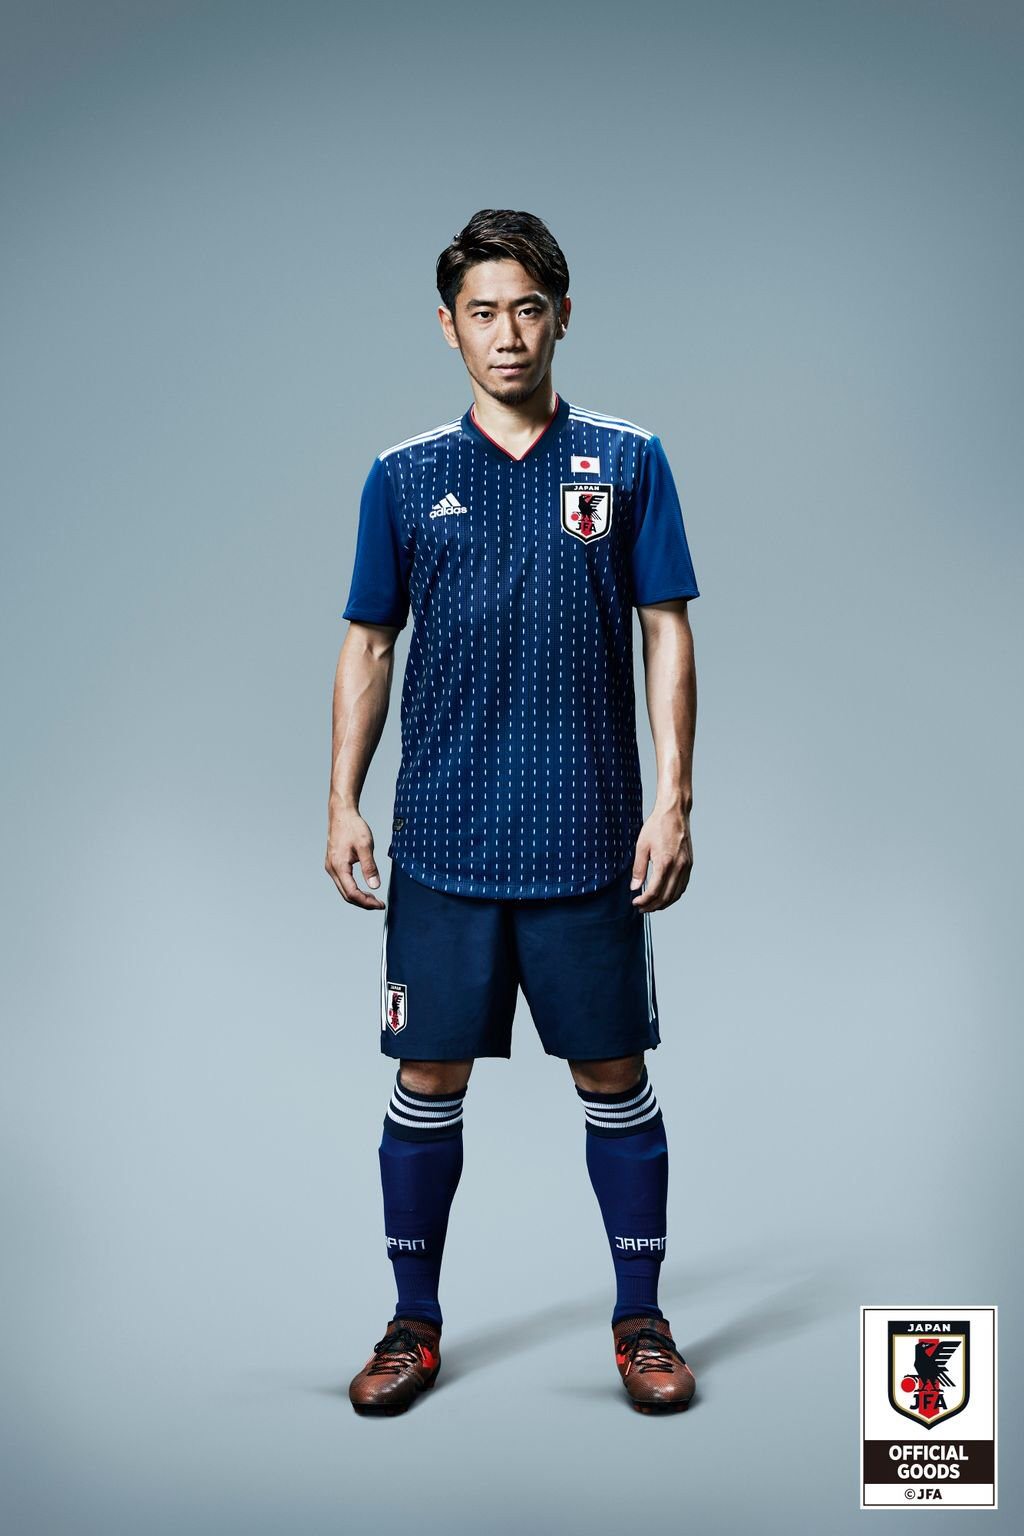 サッカー日本代表w杯仕様の新ユニフォーム 選手が着ても恐ろしくダサい サカサカ10 サッカーまとめ速報